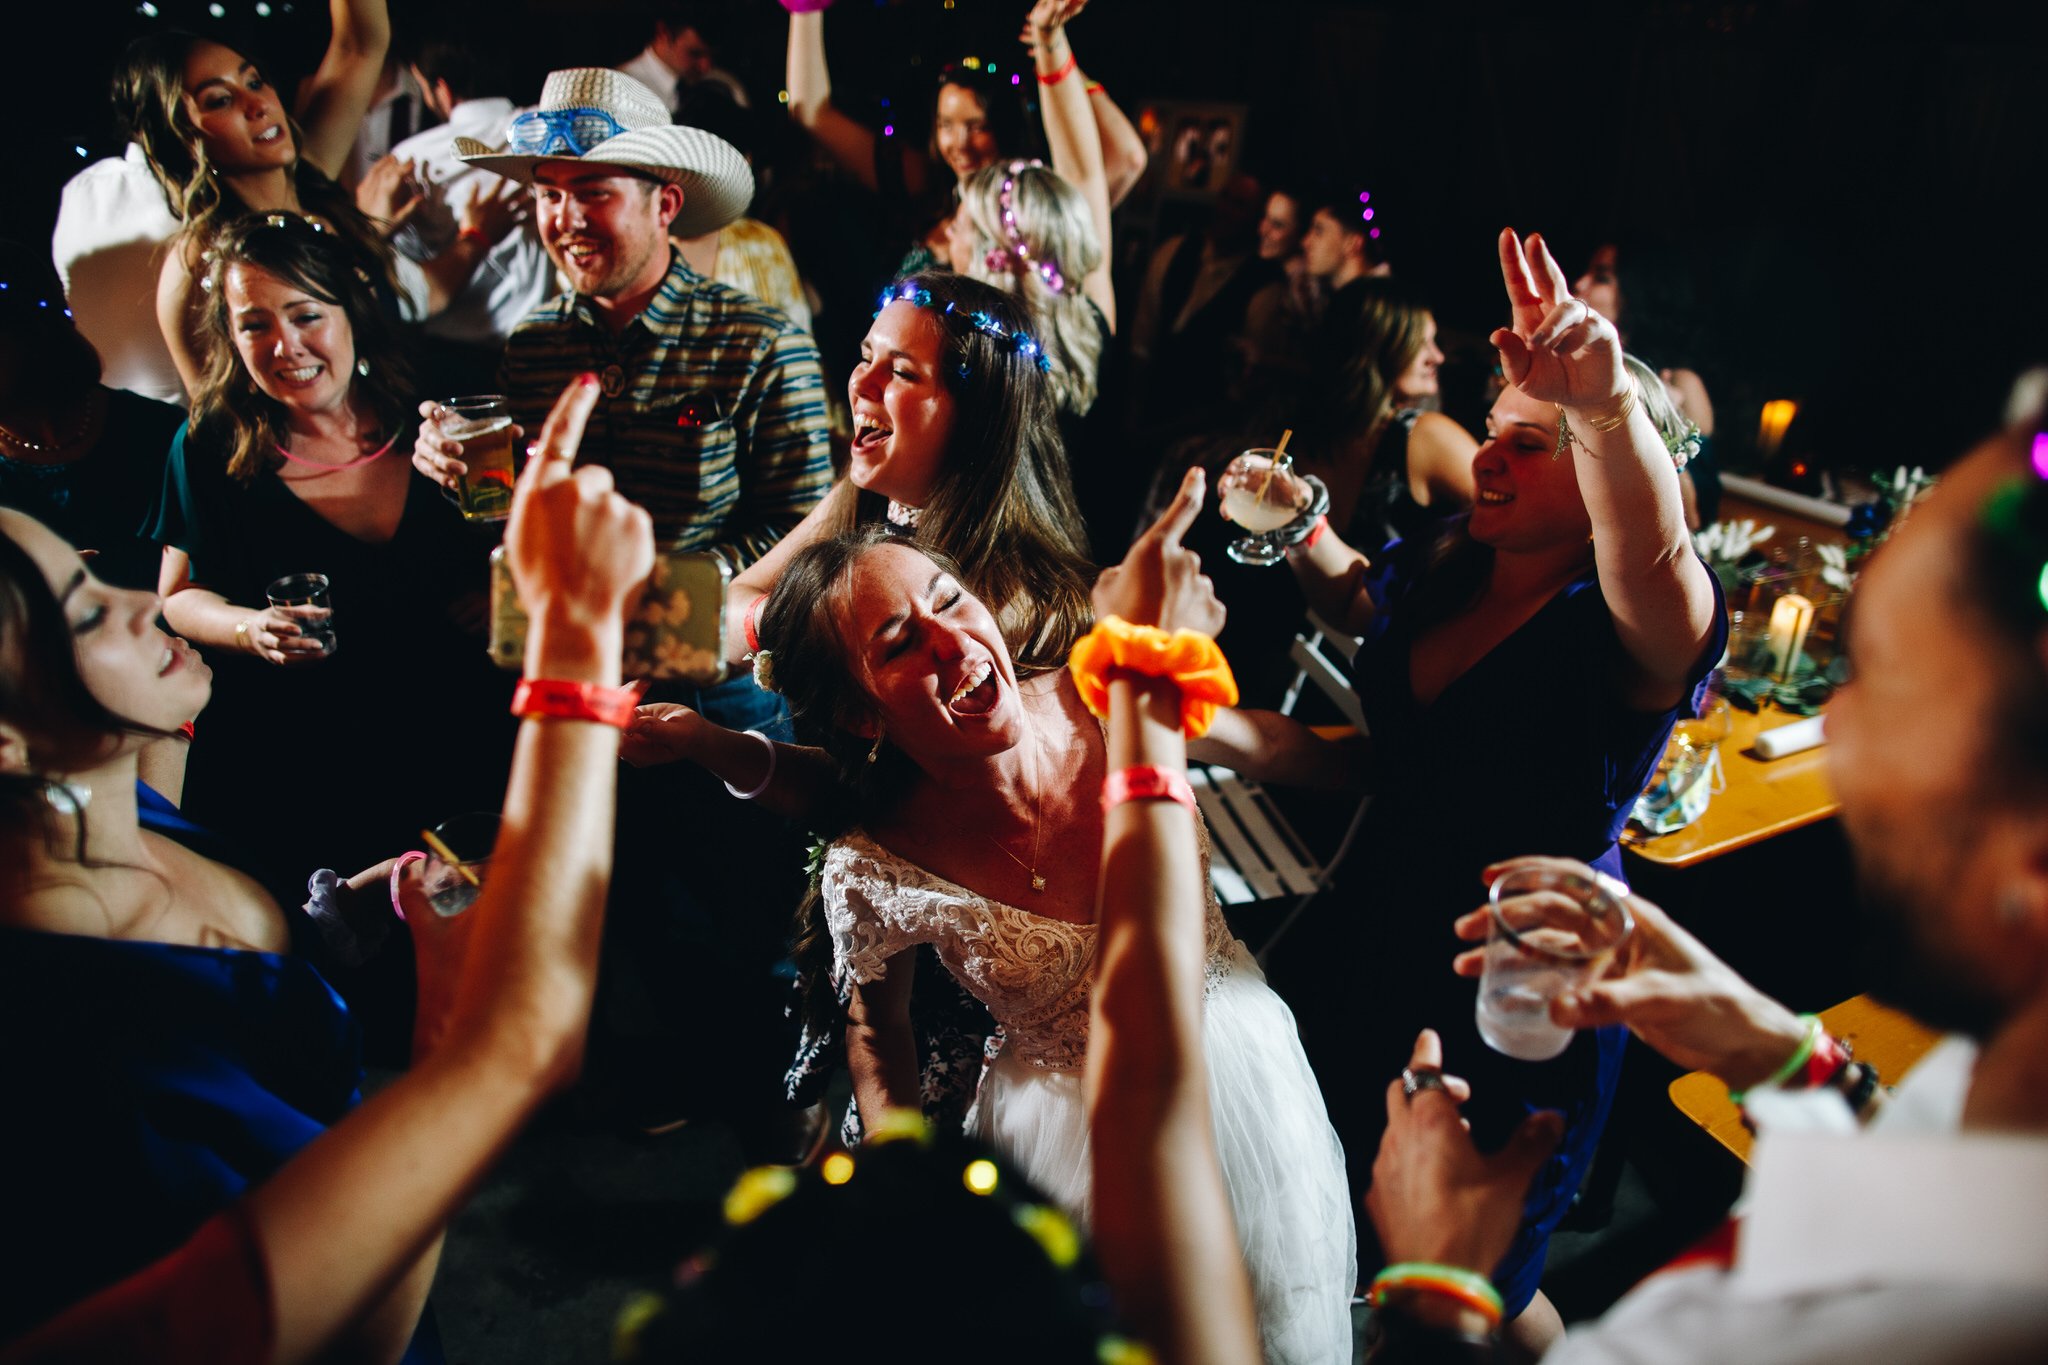 Colorado-wedding-photographer-2021-review-65.jpg